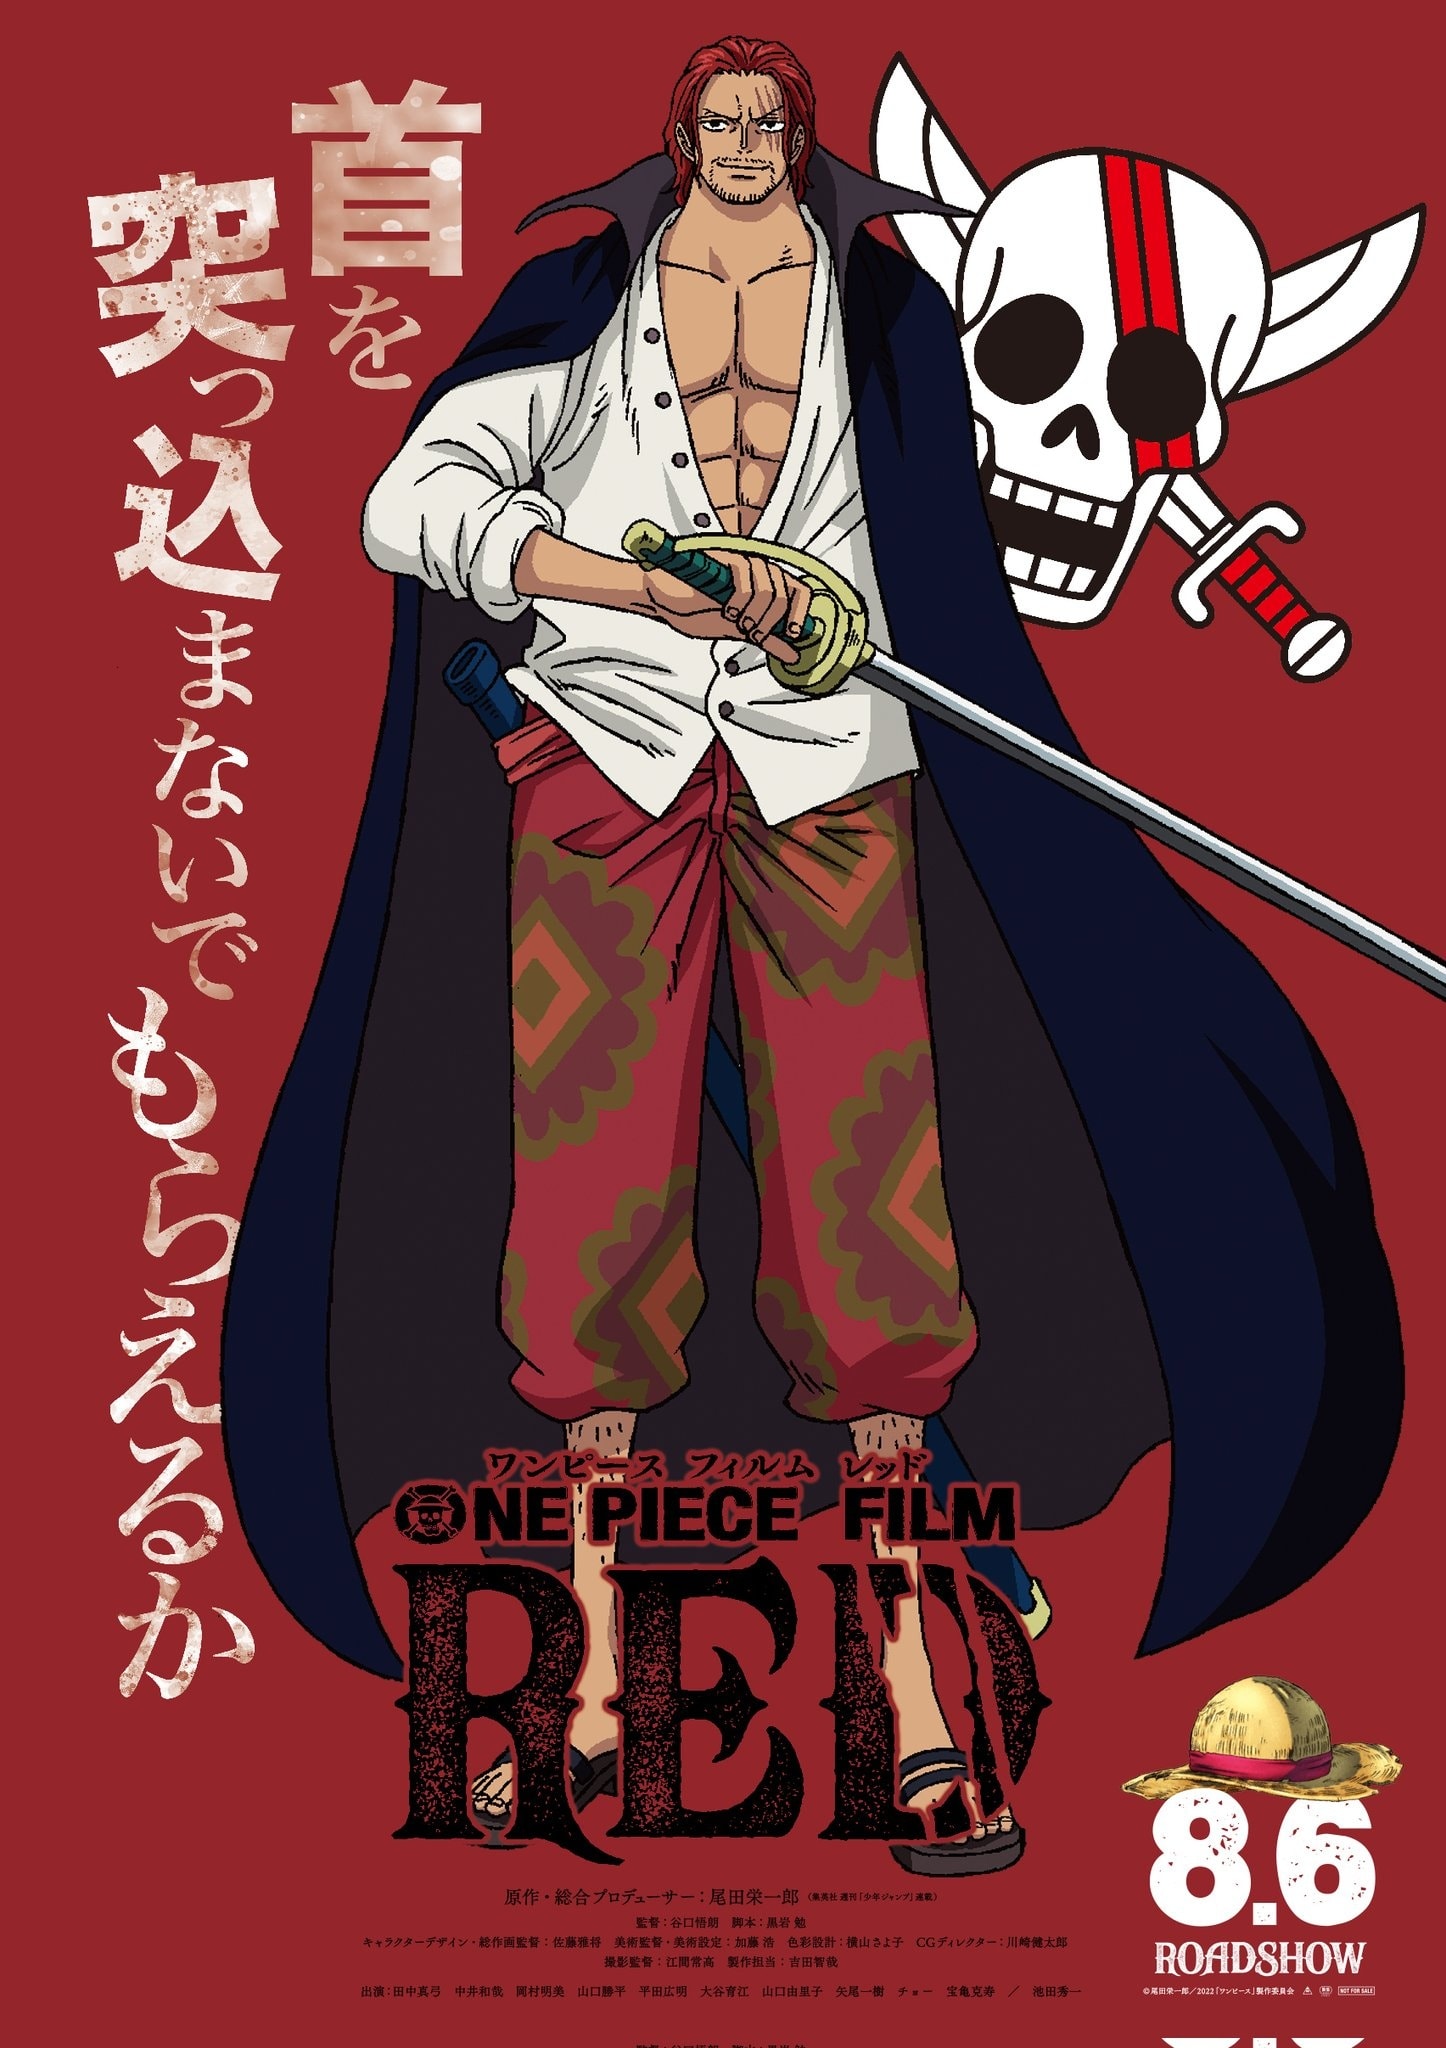 Nếu bạn là fan của One Piece, bạn sẽ không thể bỏ qua Shanks, con gái và bộ phim One Piece Film: Red. Hãy xem thông tin cùng với hình ảnh liên quan để biết thêm về bộ phim này và nhân vật Shanks con gái.